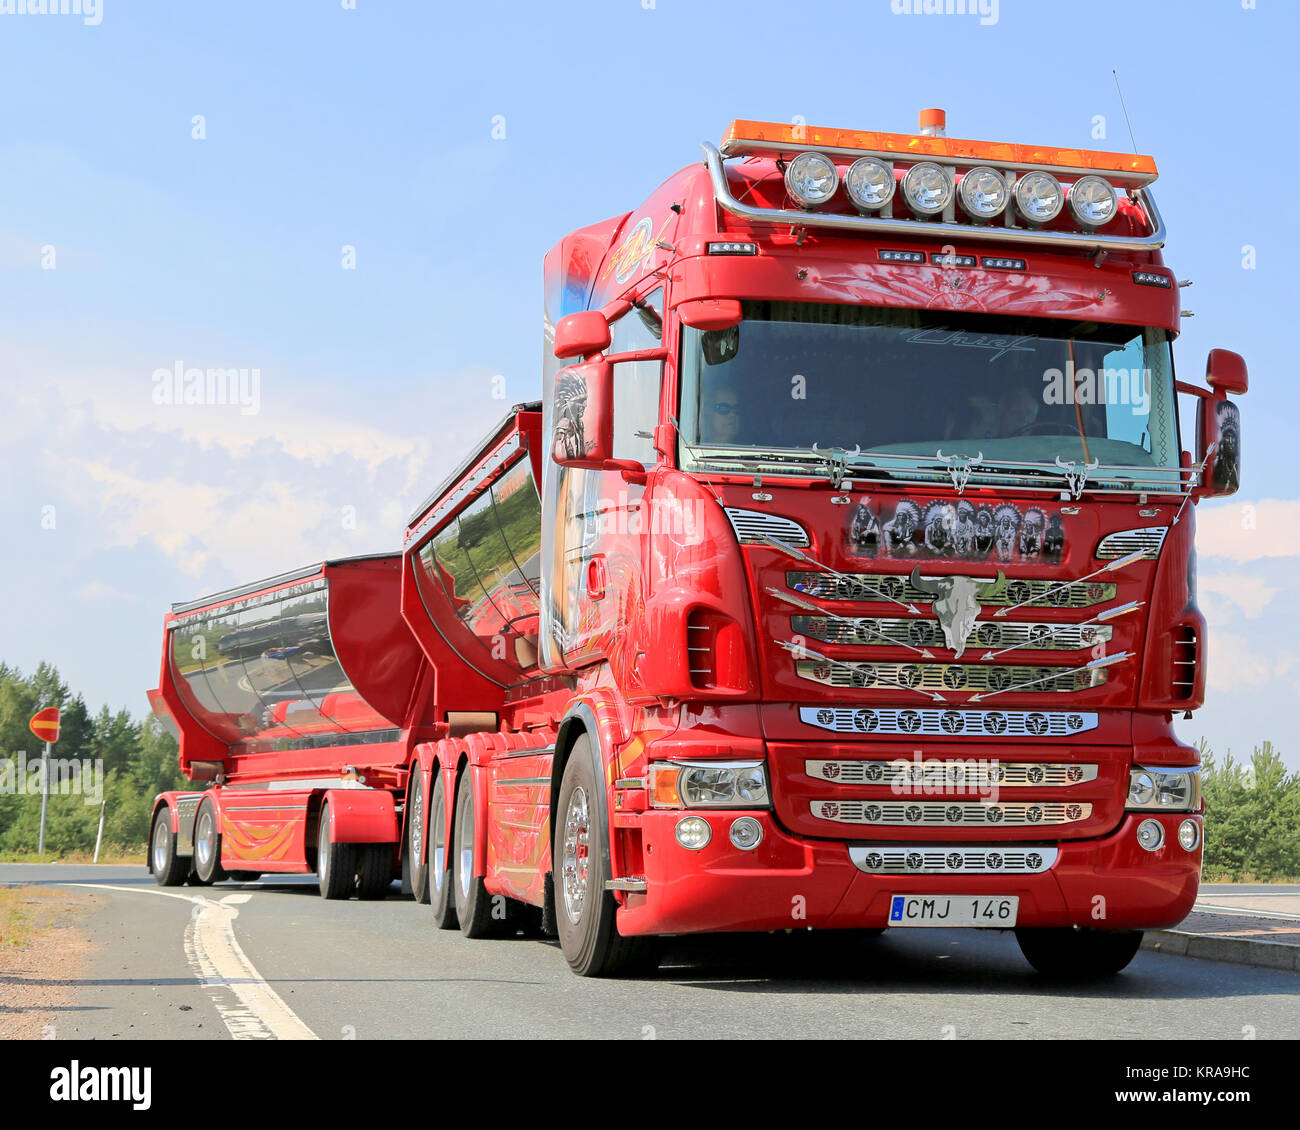 LEMPAALA, Finlandia - Agosto 7, 2014: show sueco camión Scania R480 El jefe  llega a Lempaala como parte de los camiones del convoy para poder mostrar  la carretilla 2014 Fotografía de stock - Alamy